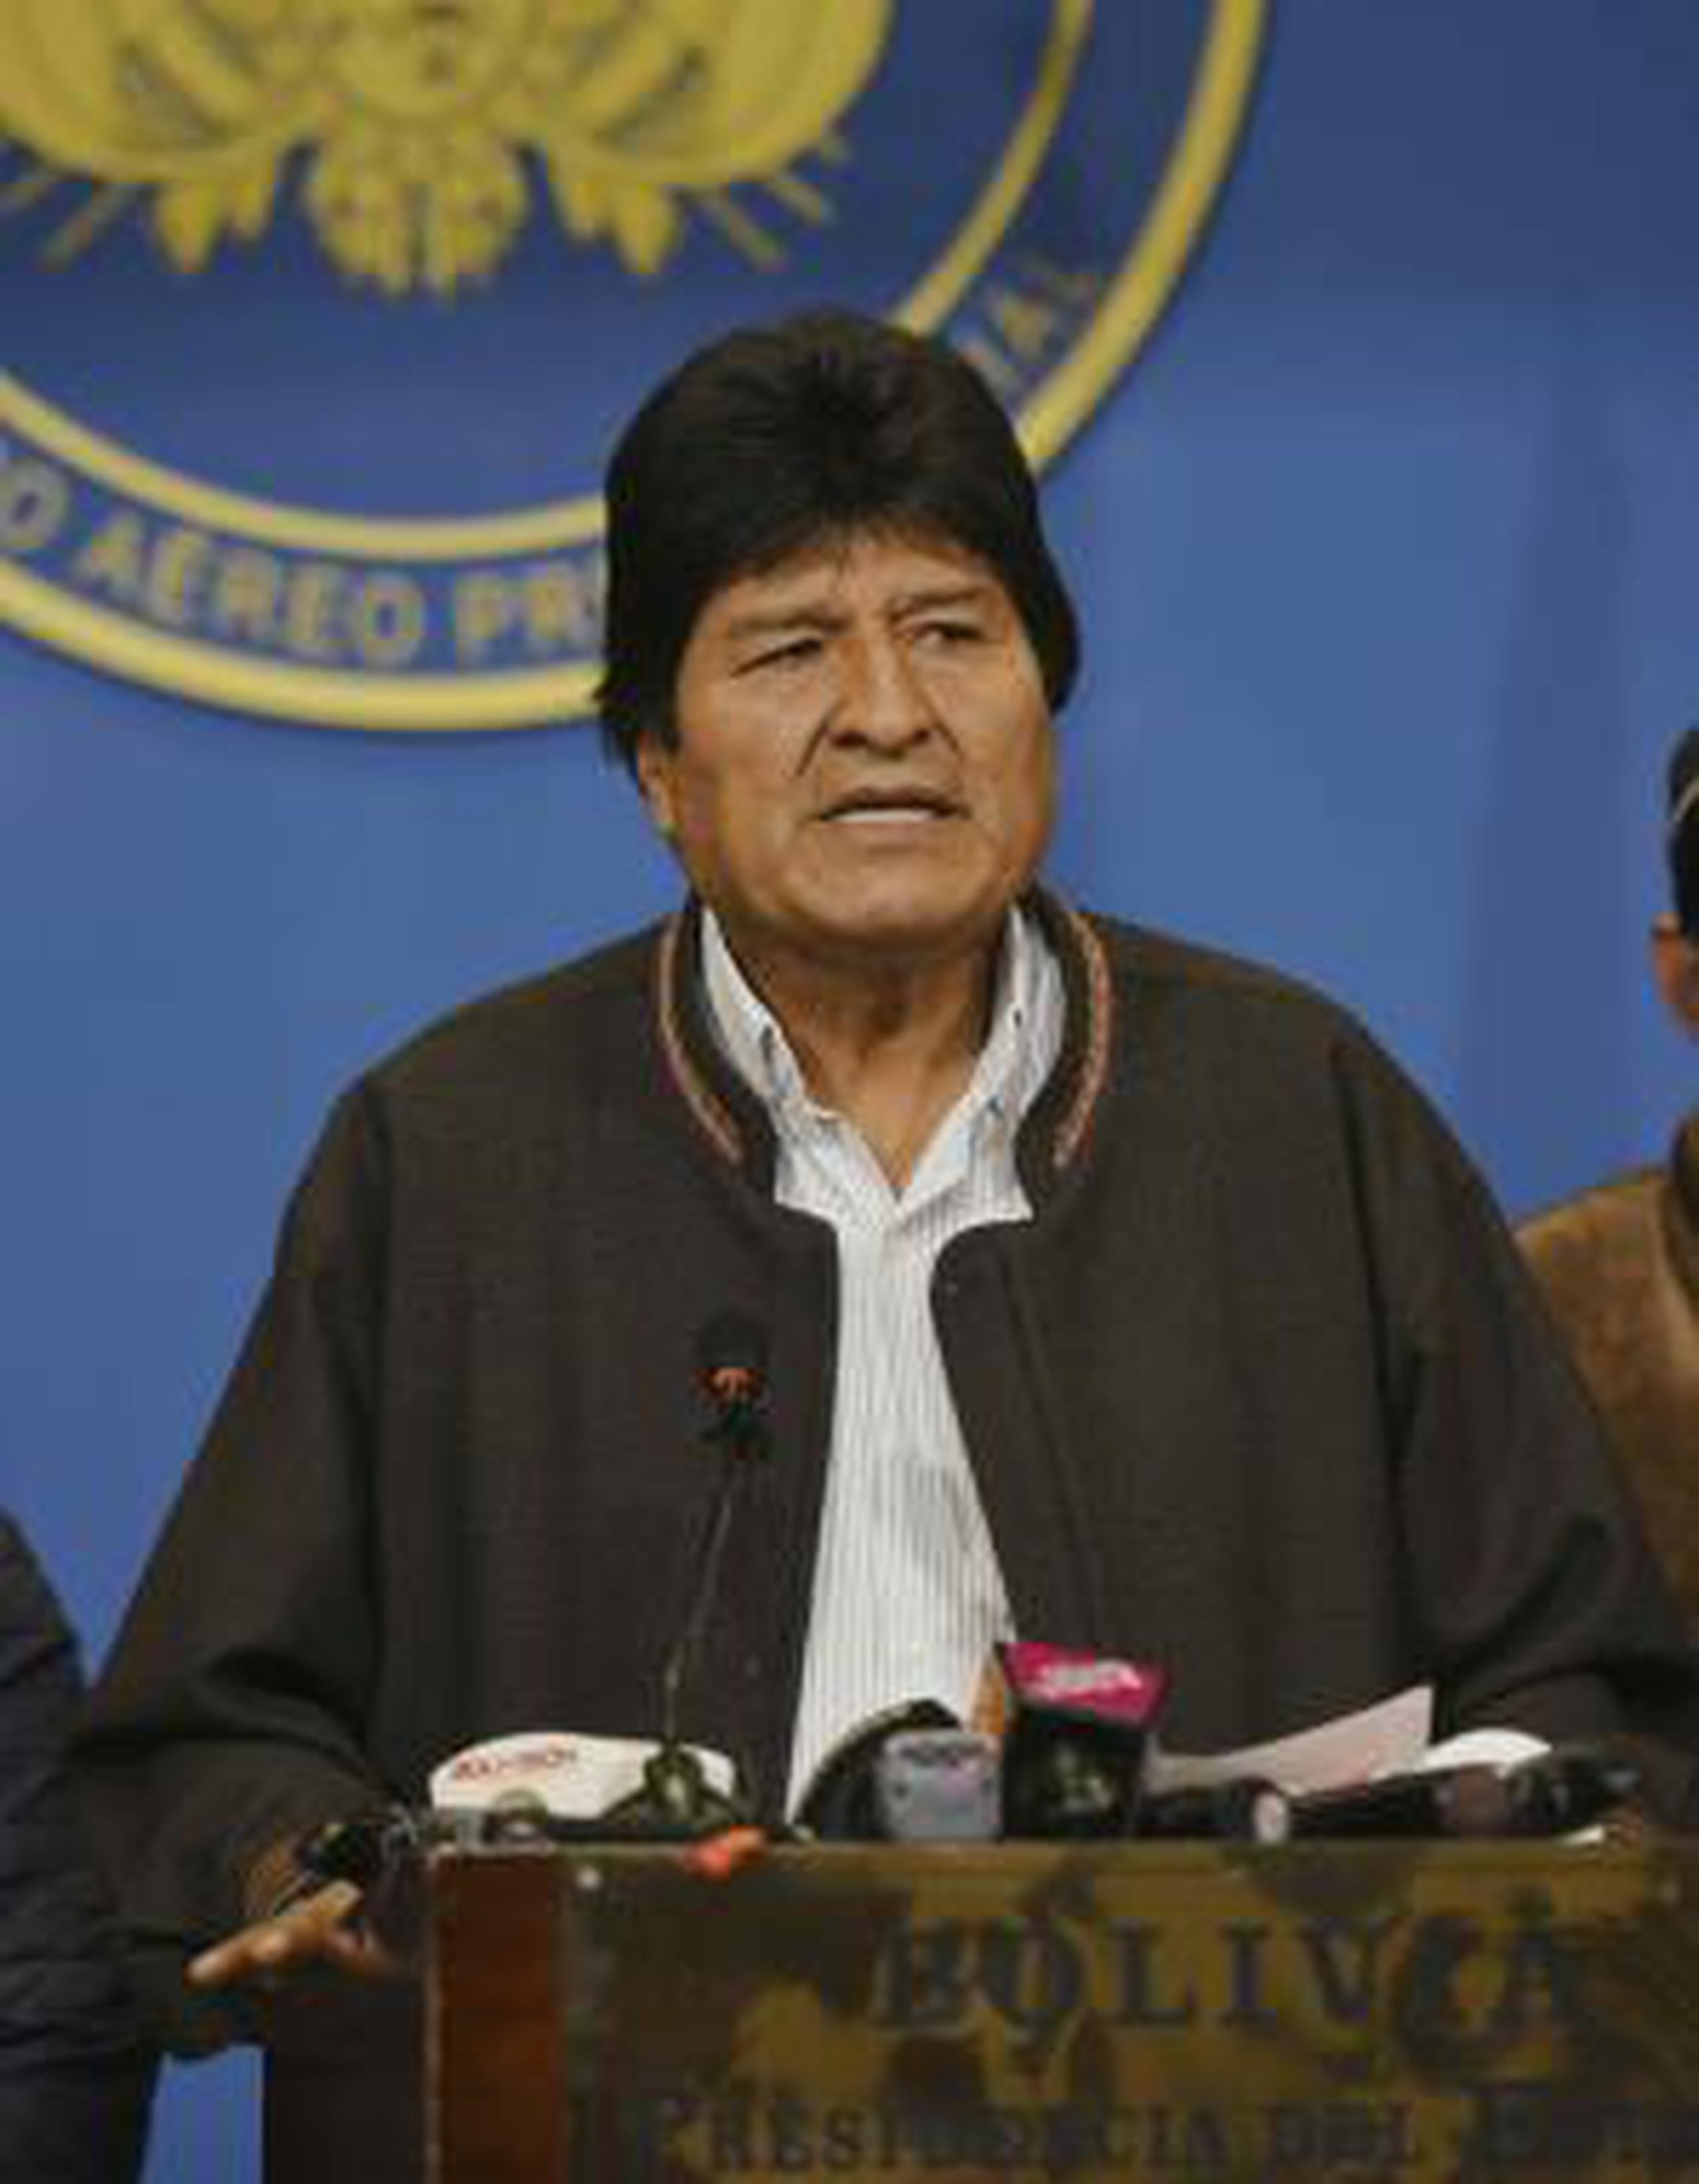 Evo Morales (AP)